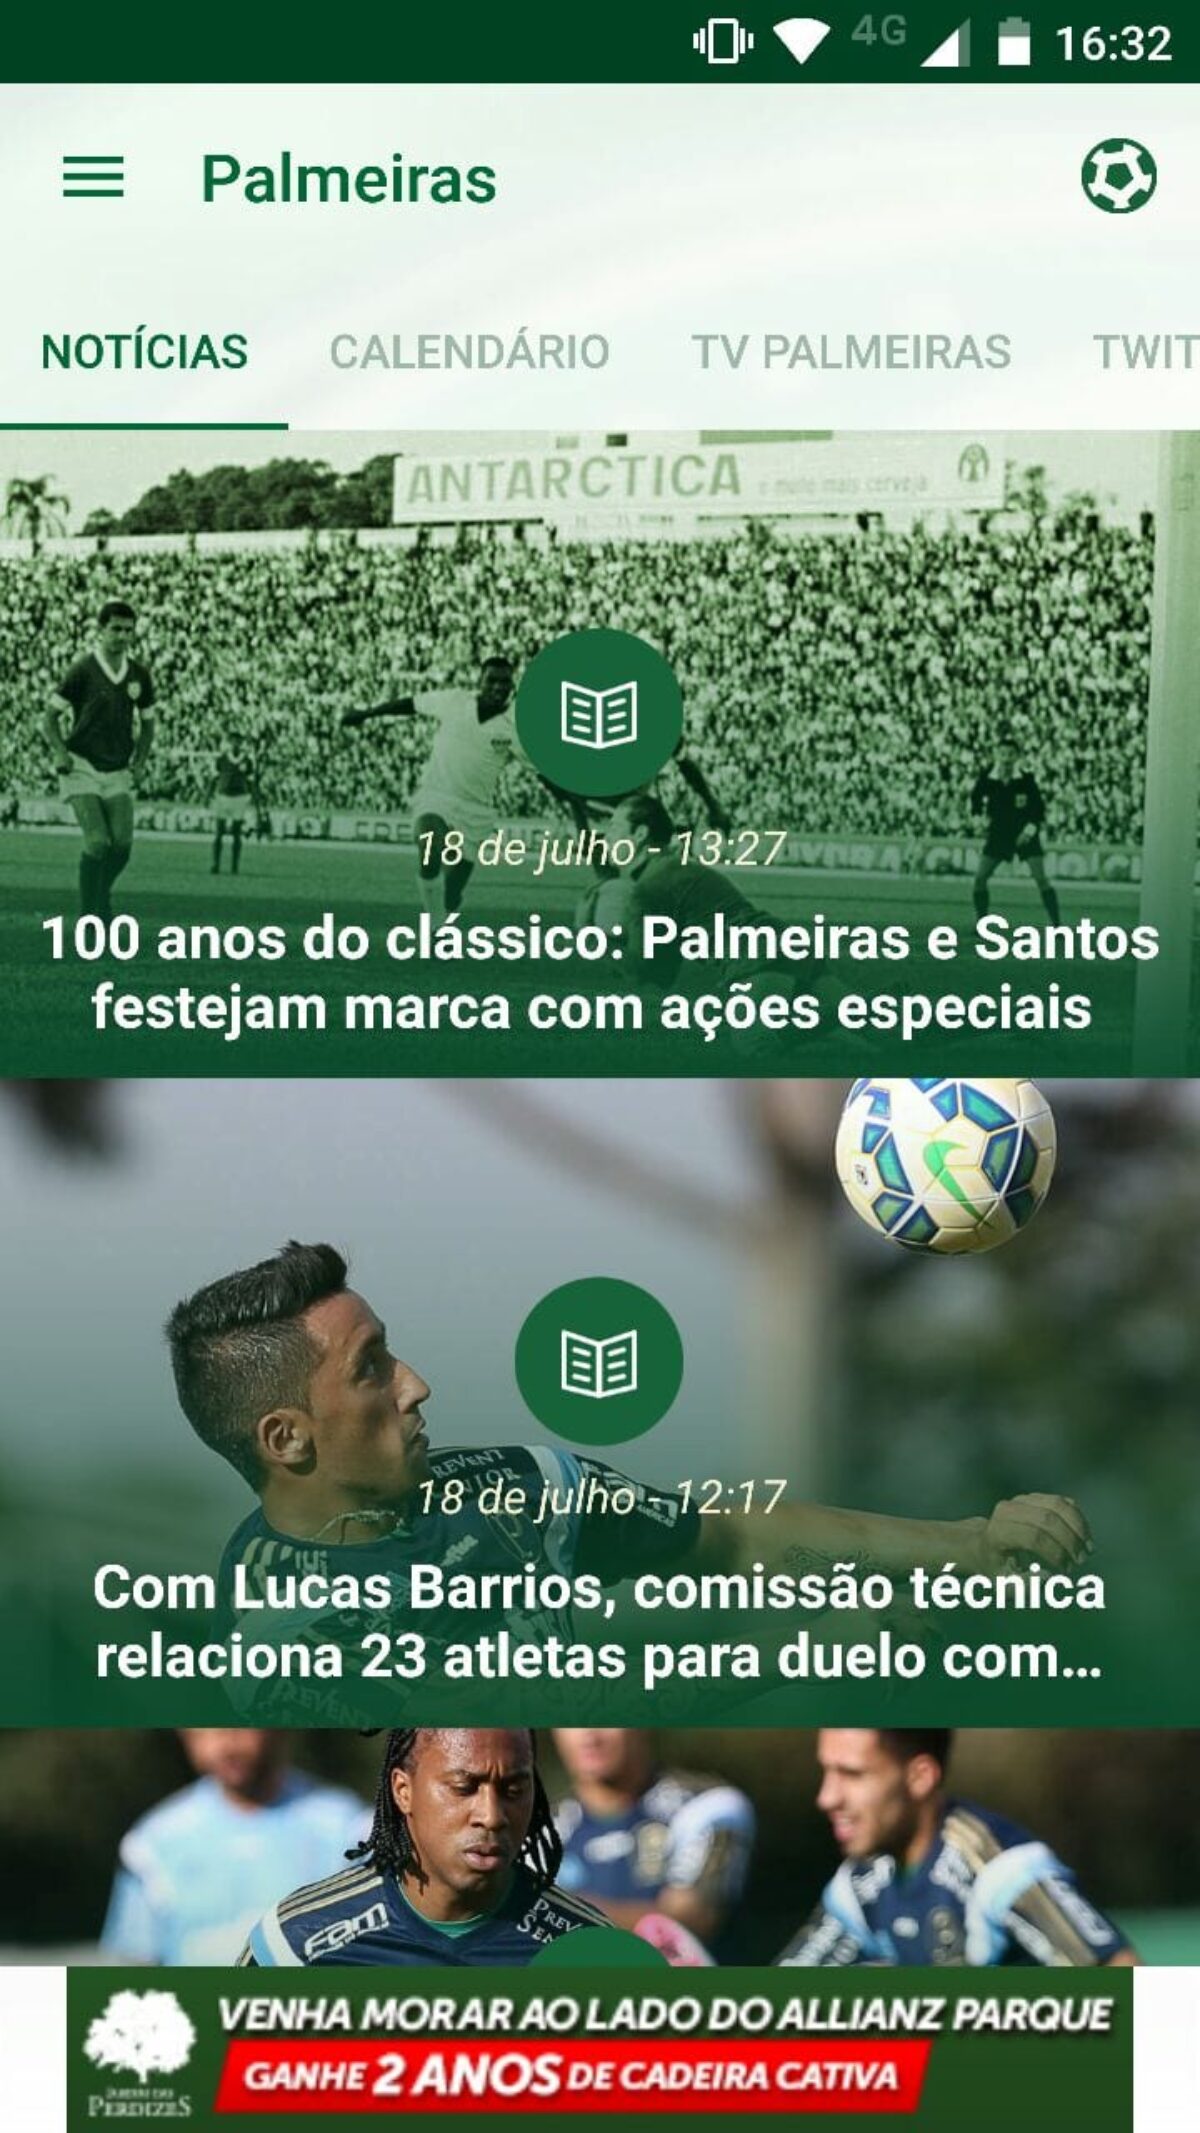 Palmeiras Online - ➤ Baixe grátis nosso app para celular e tenha